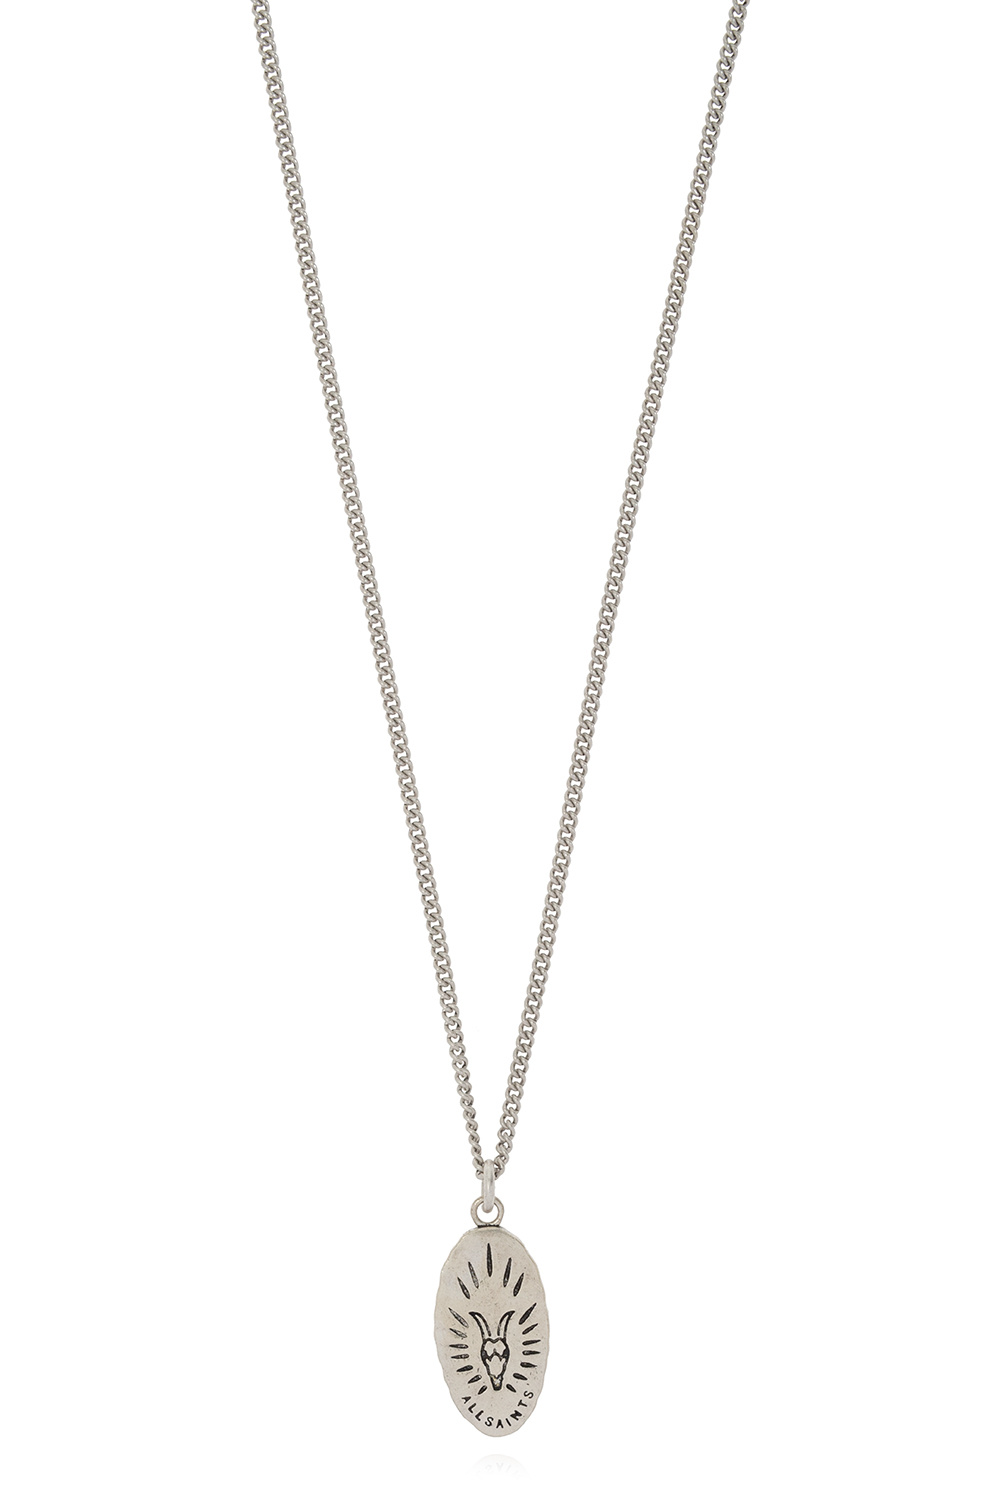 AllSaints ‘Saint’ silver necklace